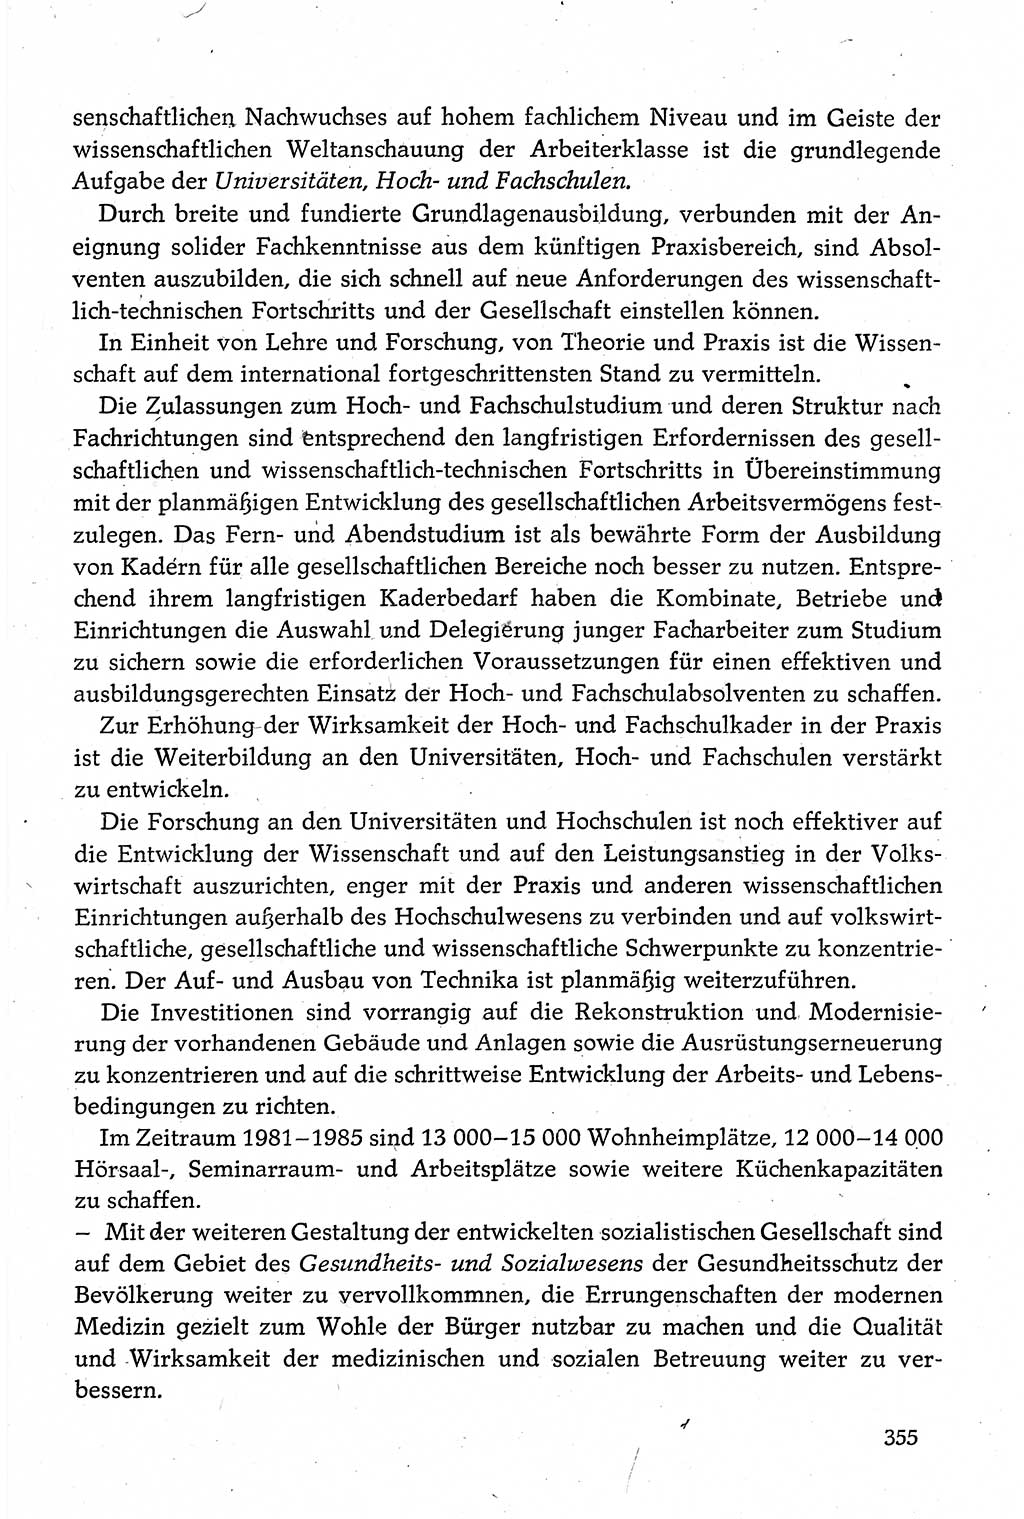 Dokumente der Sozialistischen Einheitspartei Deutschlands (SED) [Deutsche Demokratische Republik (DDR)] 1980-1981, Seite 355 (Dok. SED DDR 1980-1981, S. 355)